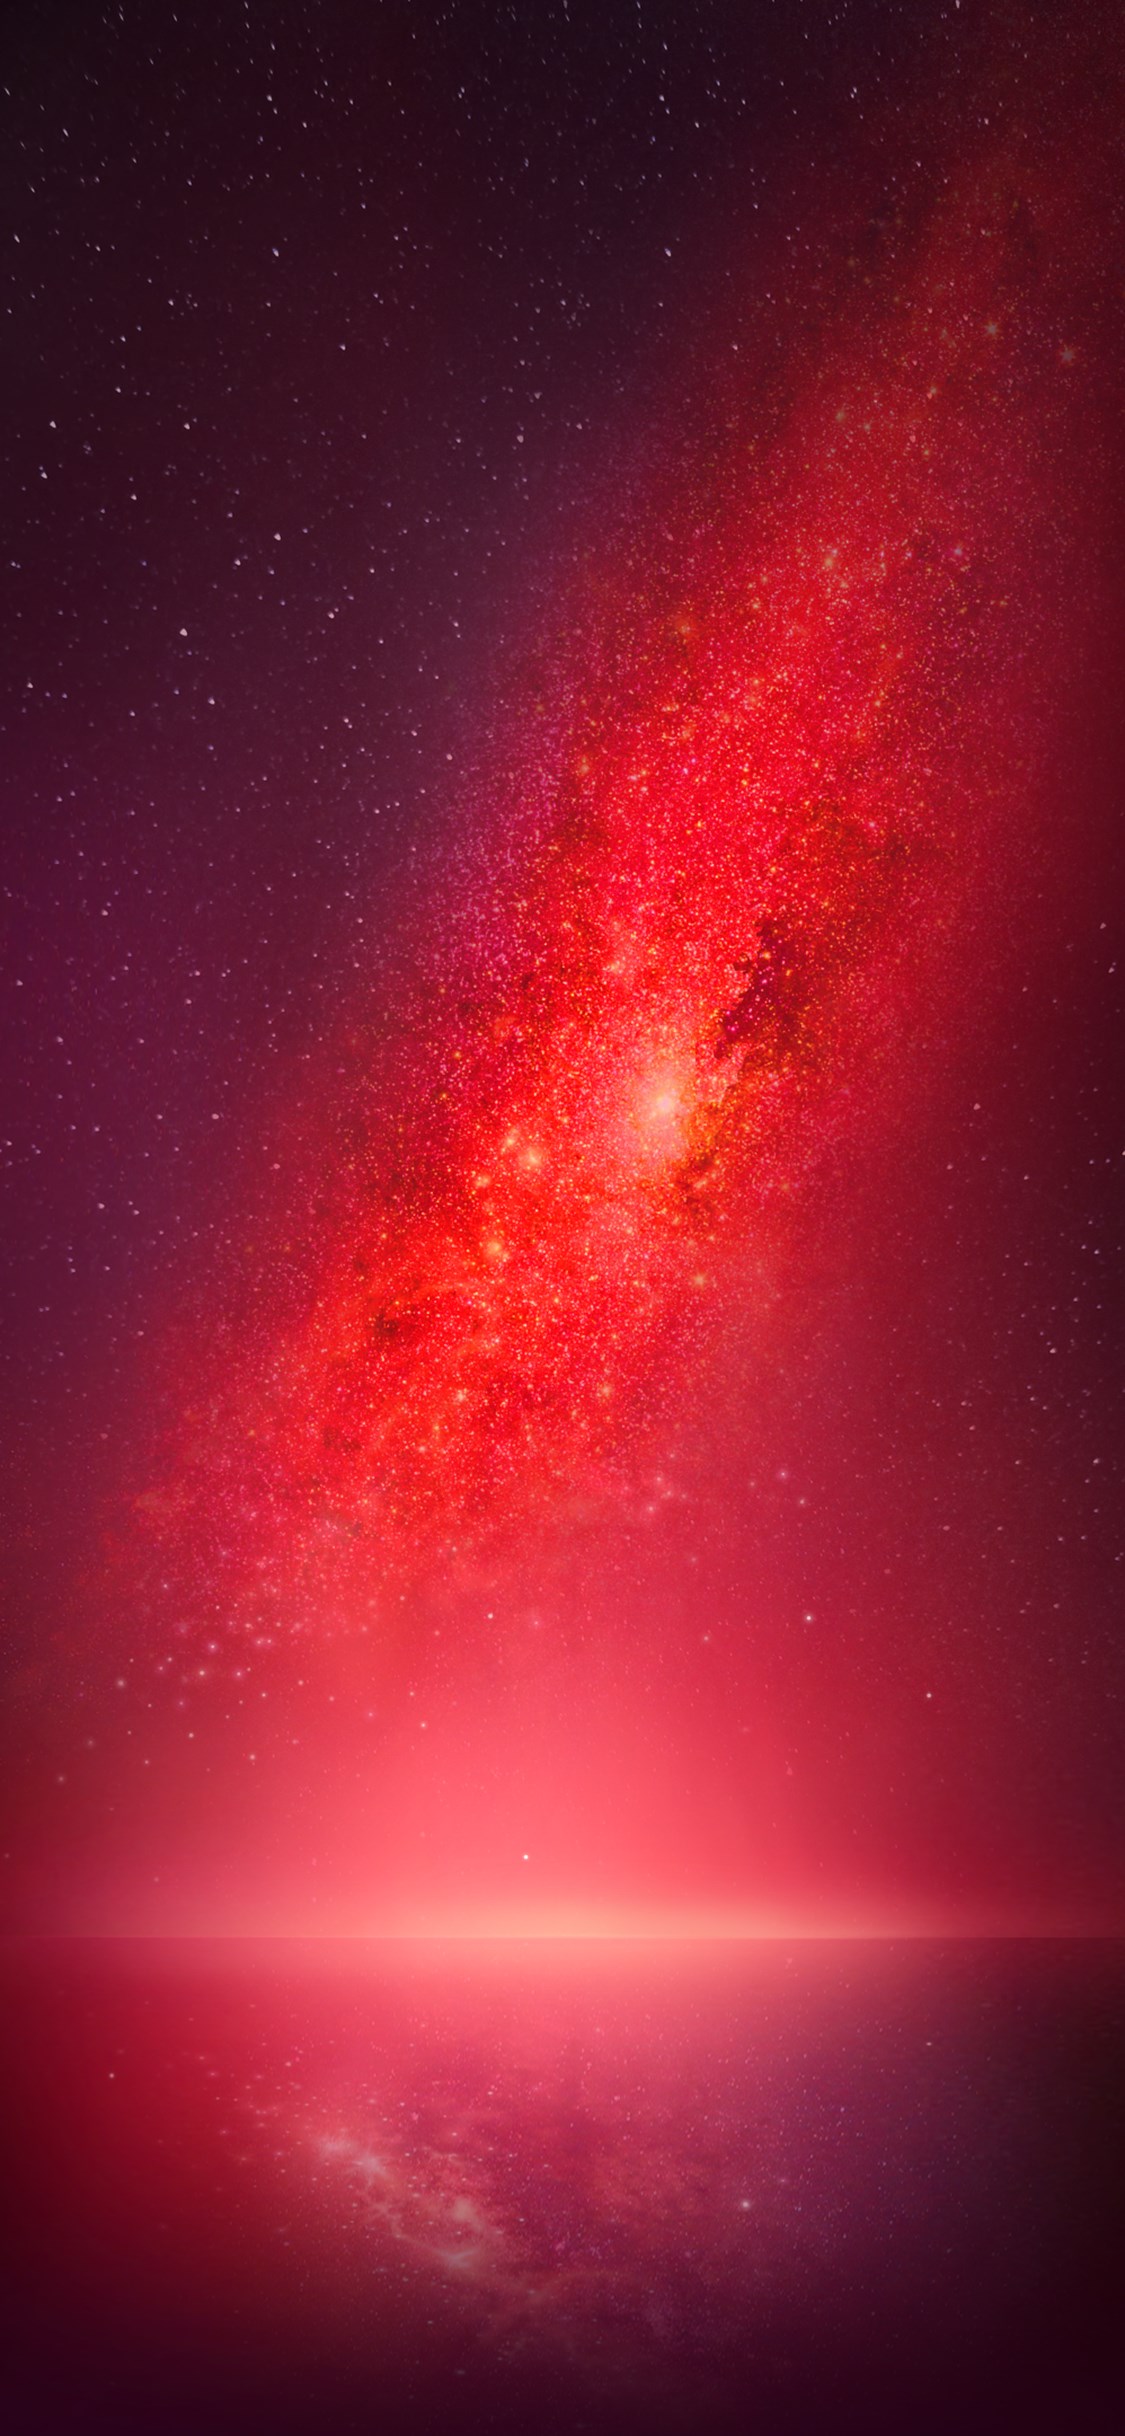 immagini da parati hd,rosso,cielo,rosa,atmosfera,oggetto astronomico